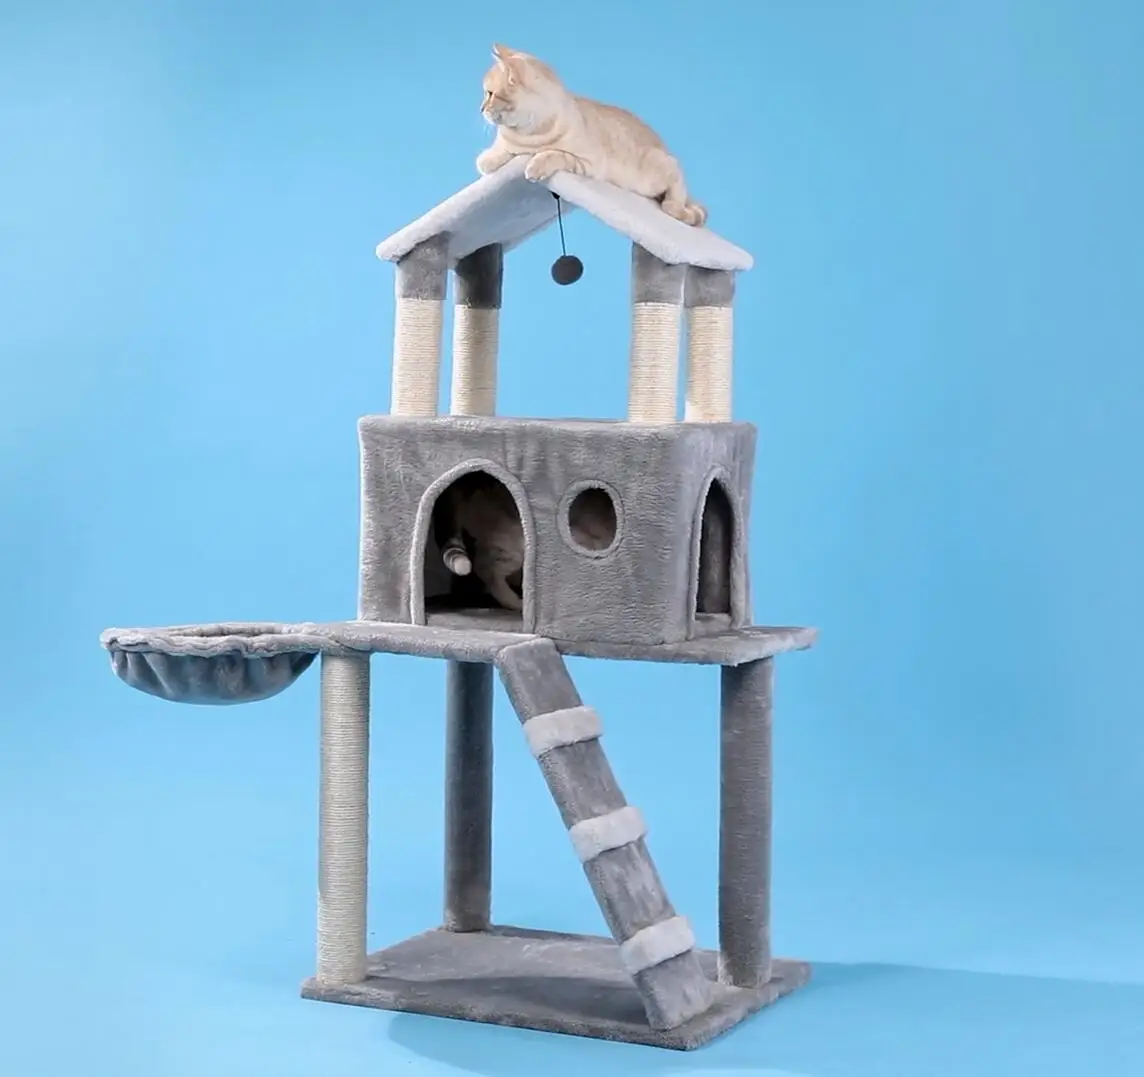 Vidaus Pristatymo Medžio Laipiojimo Medžio Katė Šokinėja Žaislas Įdomus Braižymo Pranešimų Kietas Katės Lipti Rėmo Naminių Reikmenys Produktus